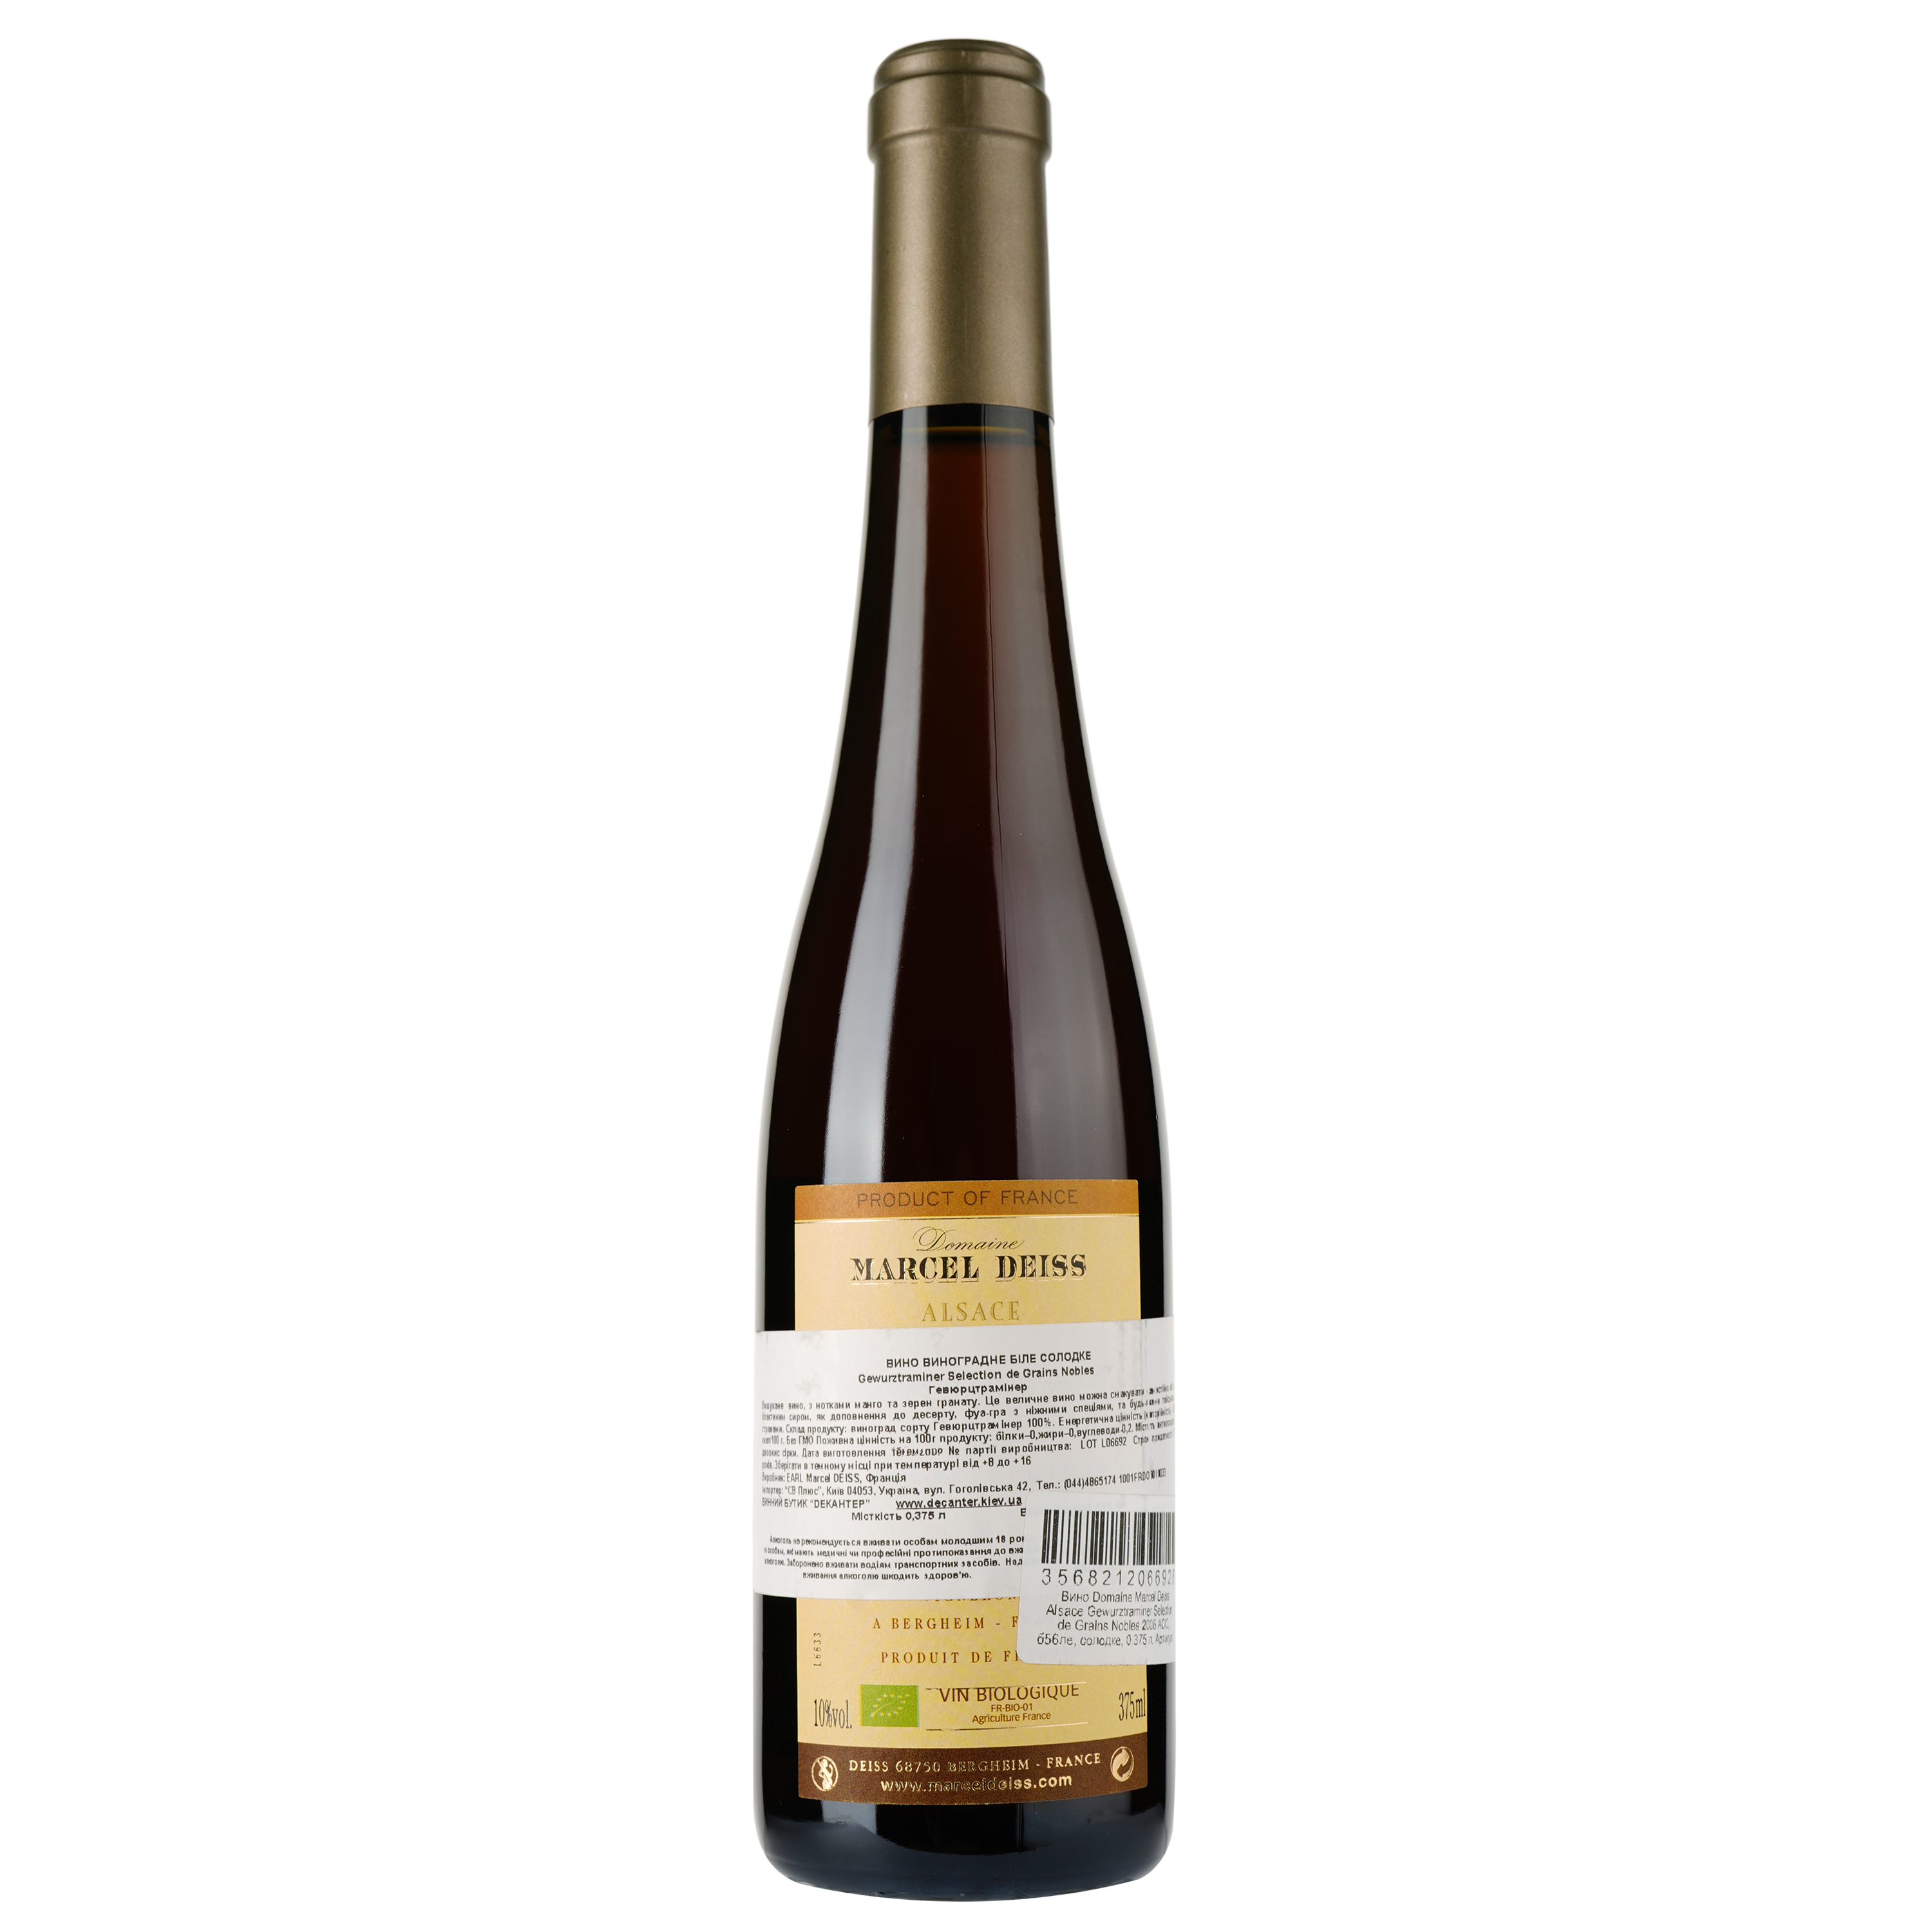 Вино Domaine Marcel Deiss Alsace Gewurztraminer Selection de Grains Nobles 2006 AOC, белое, сладкое, 0,375 л - фото 2